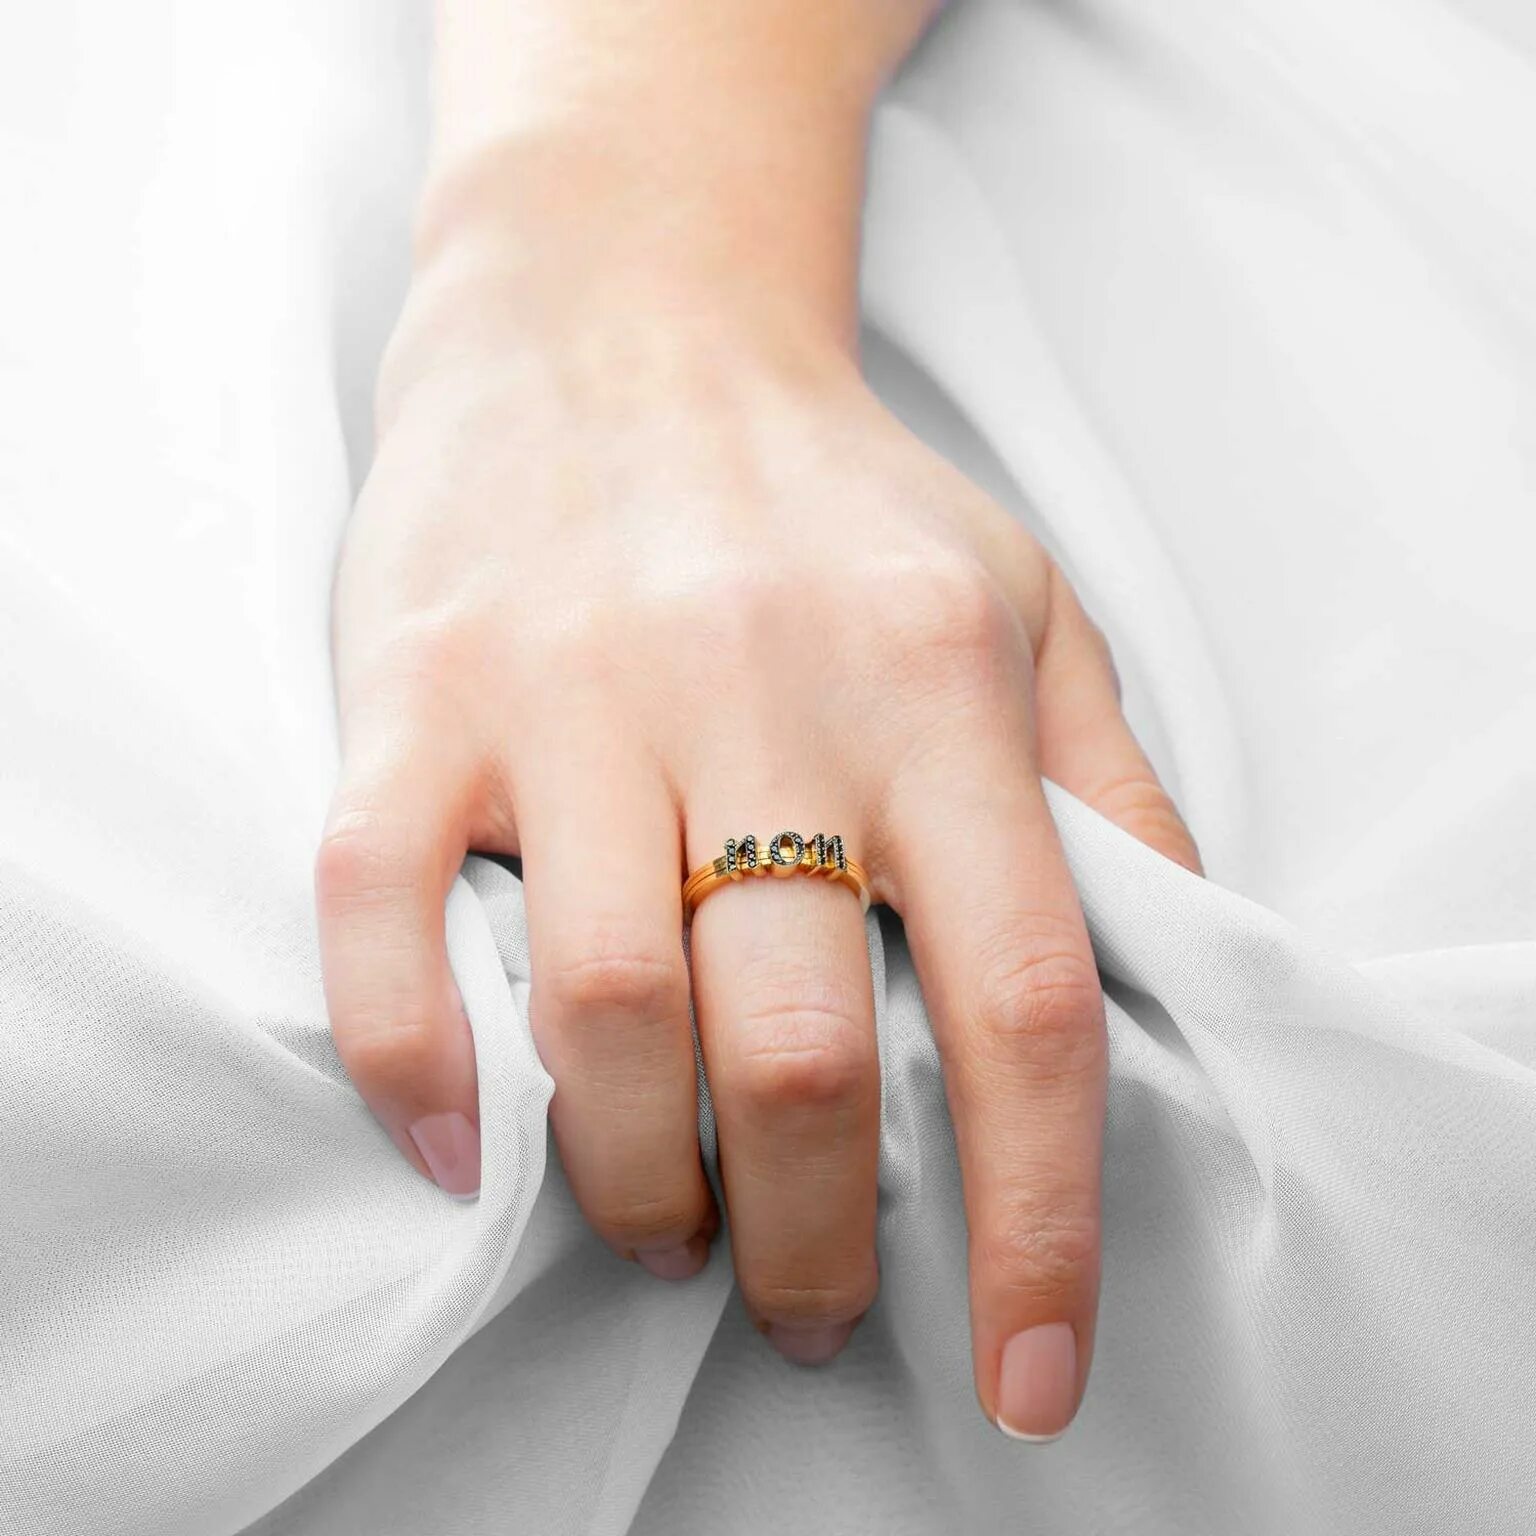 Обручальное кольцо на пальце. Свадебные кольца на пальцах. Кольцо для замужества. Обручальные кольца на руках. Кольцо когда замужем